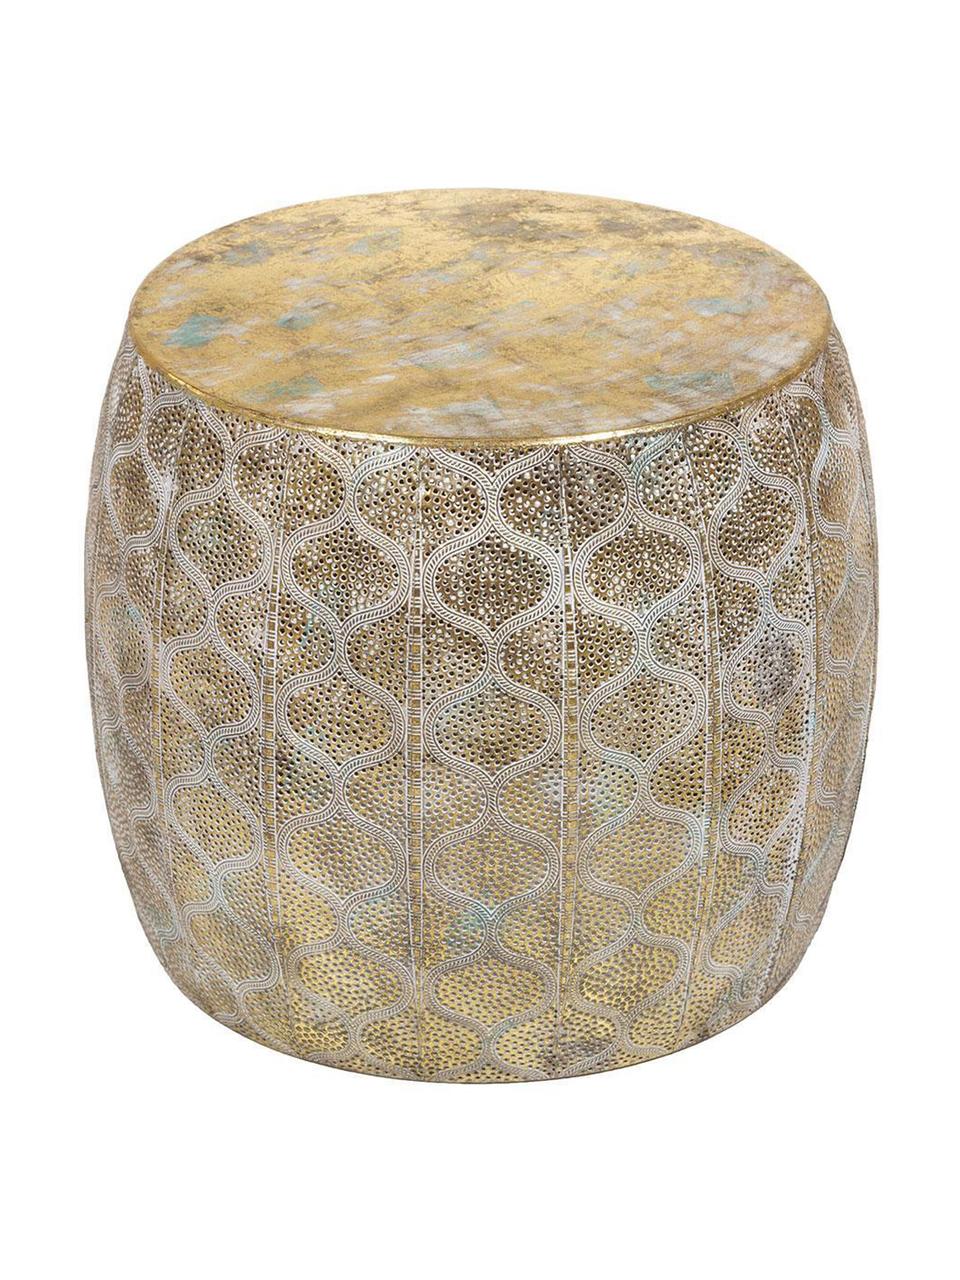 Taburete Mosaico, Hierro con efecto envejecido, Dorado envejecido
, Ø 44 x Al 38 cm